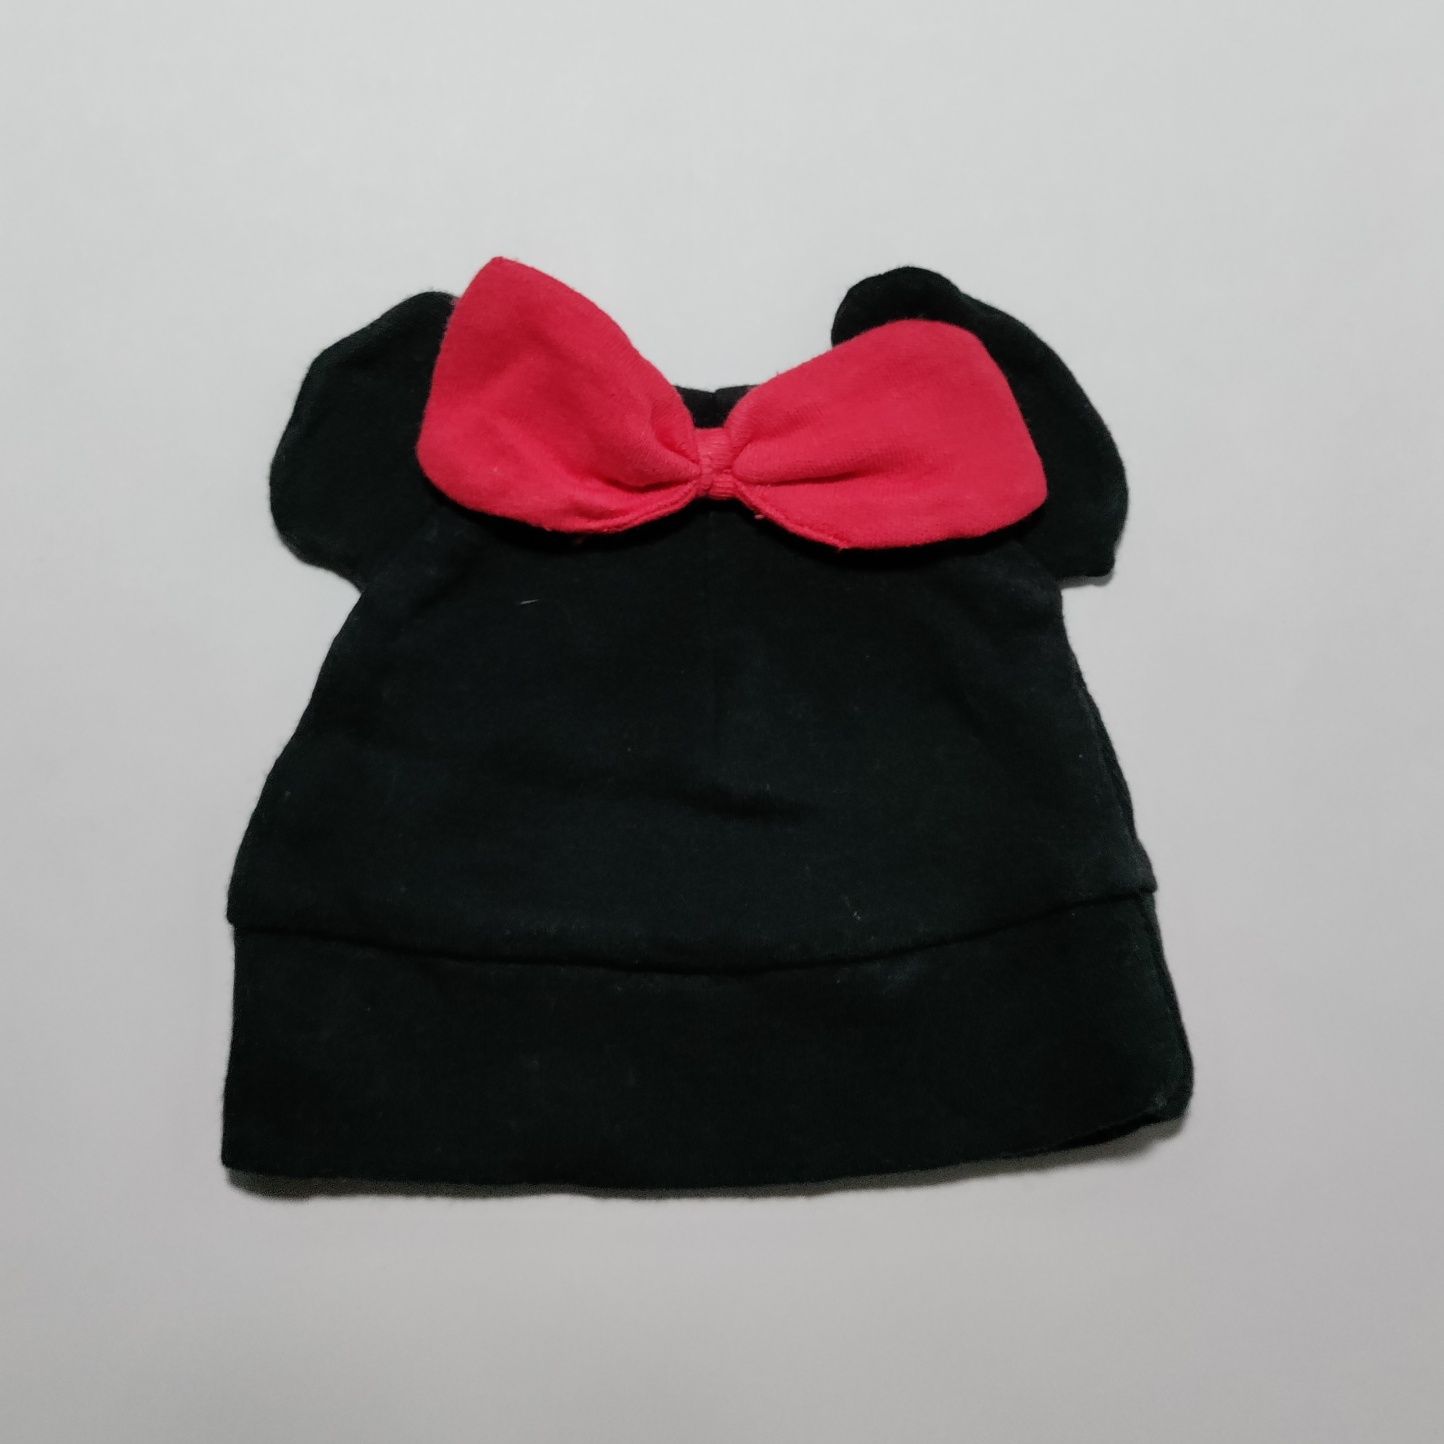 Czarna czapka czapeczka czerwona kokardka myszka Minnie 0-3 m 56 62 cm